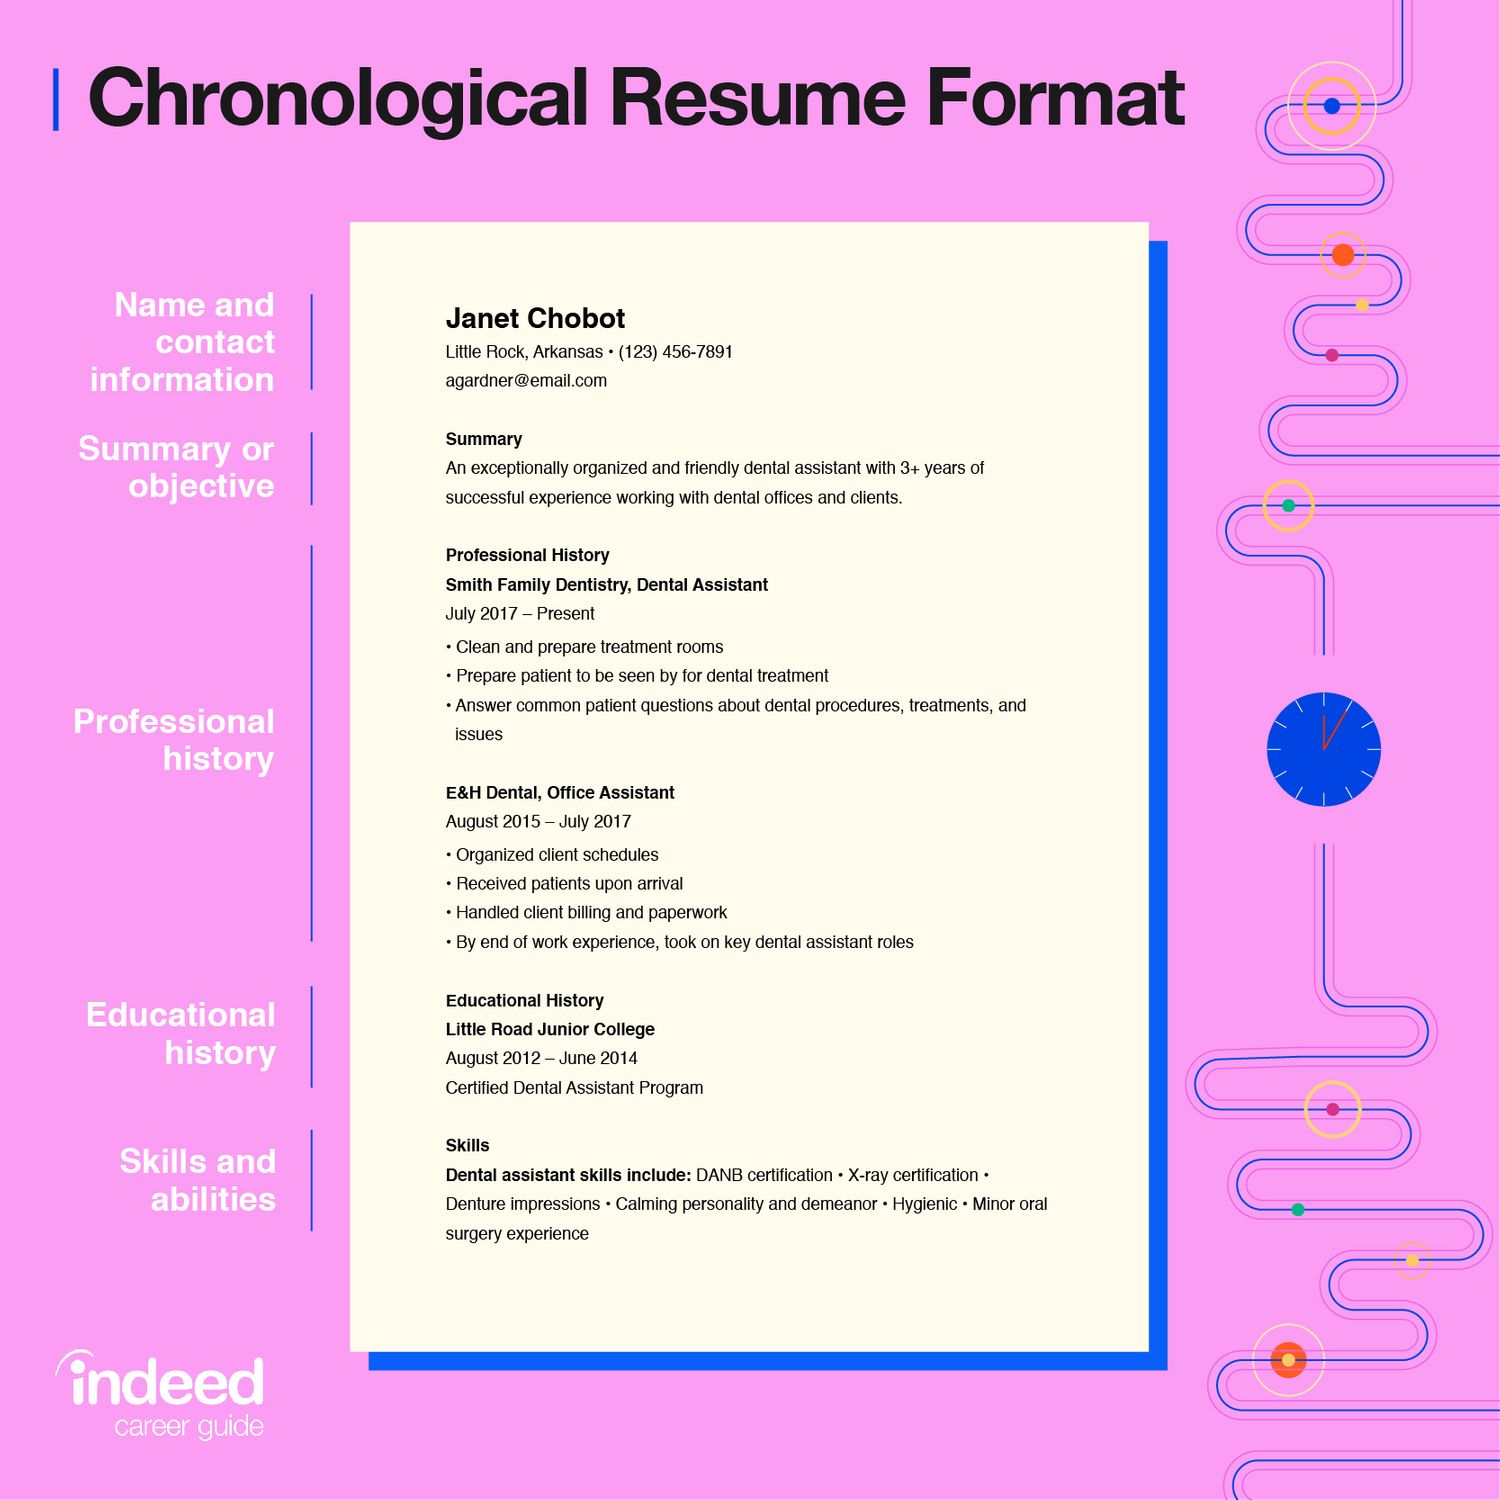 chronological resume in egypt resume writing guide in egypt